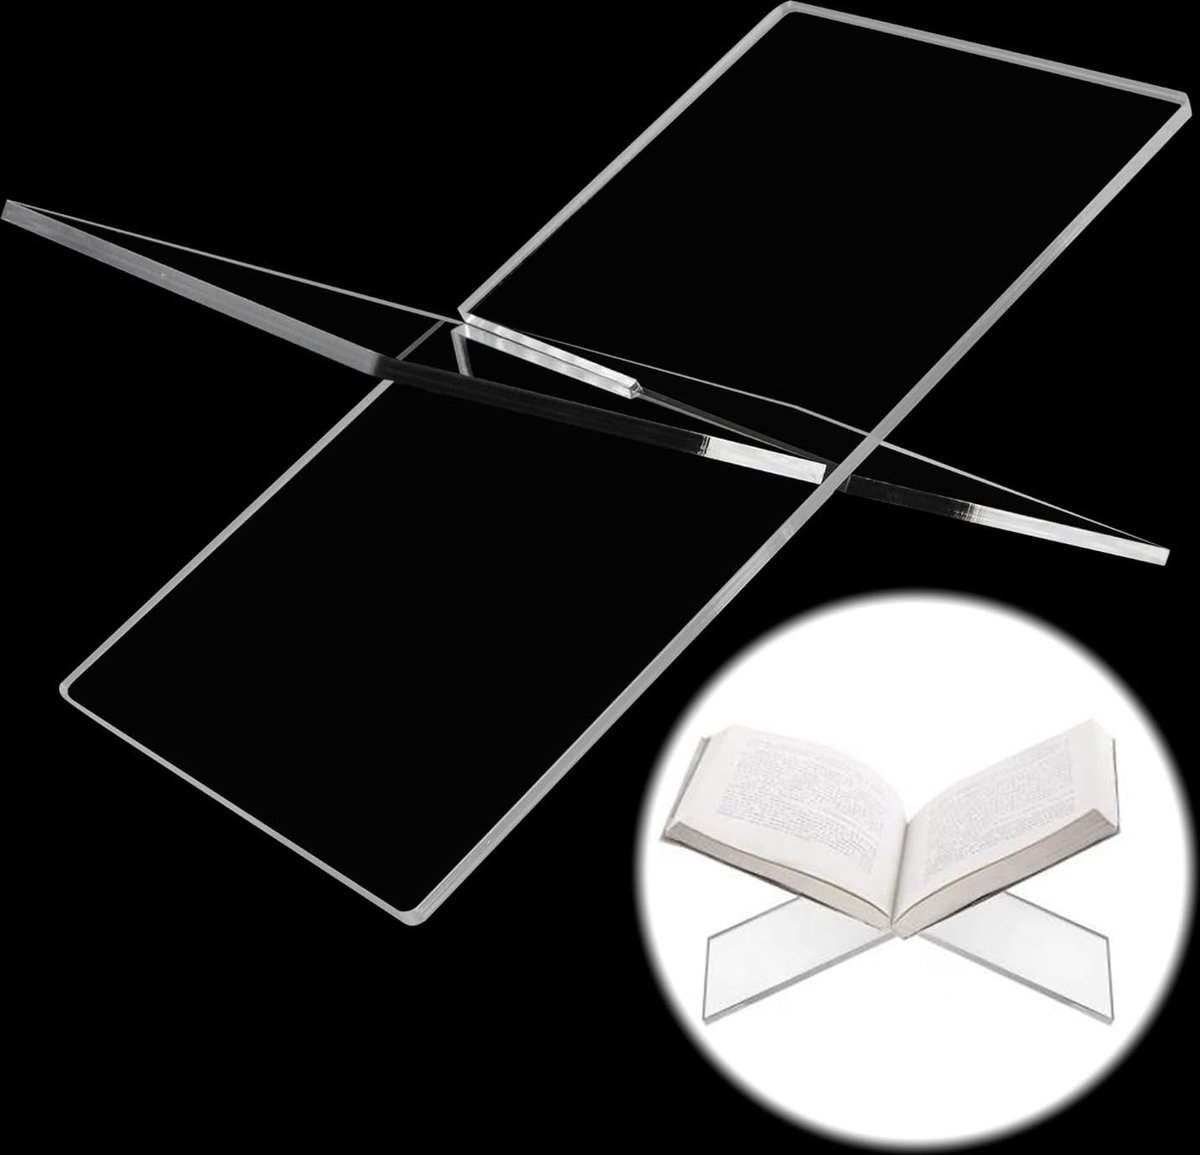 Acryl boekenstandaard schrijfstandaard boekhouder transparant X-vormig leesstandaard voor lezen keuken kantoor muziekstandaard tafelezel display boekenbioscopen 19 x 11 x 11 cm